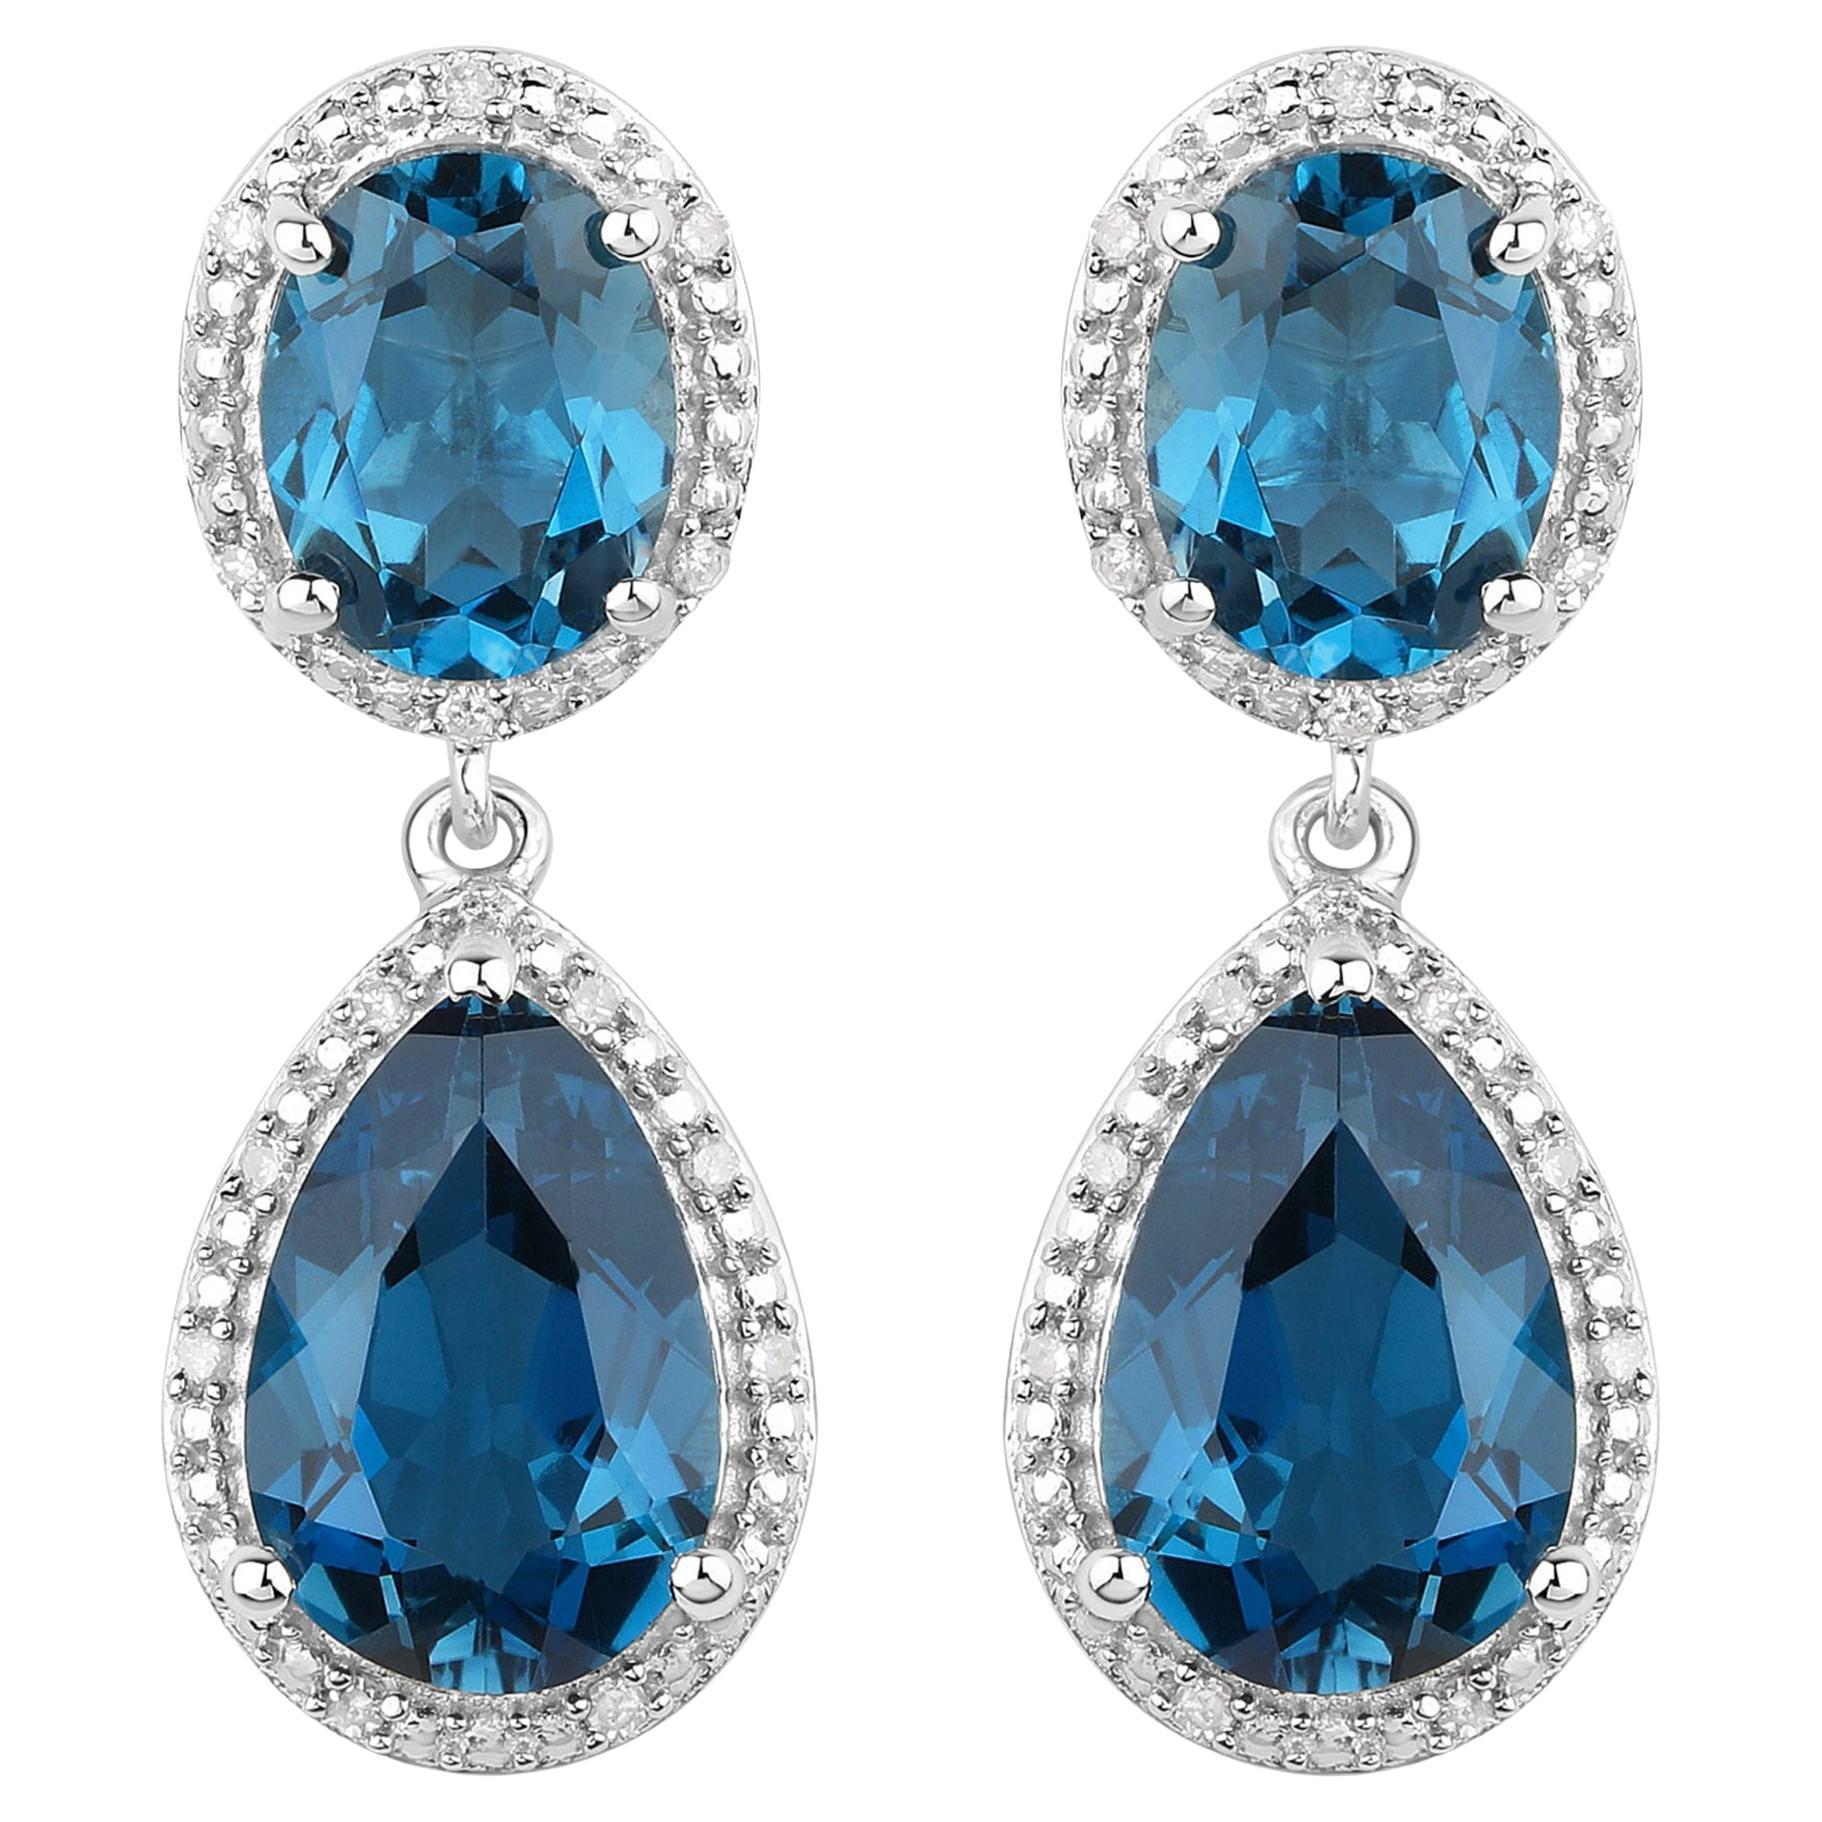 Boucles d'oreilles en topaze bleue de Londres serties de diamants de 11,45 carats au total